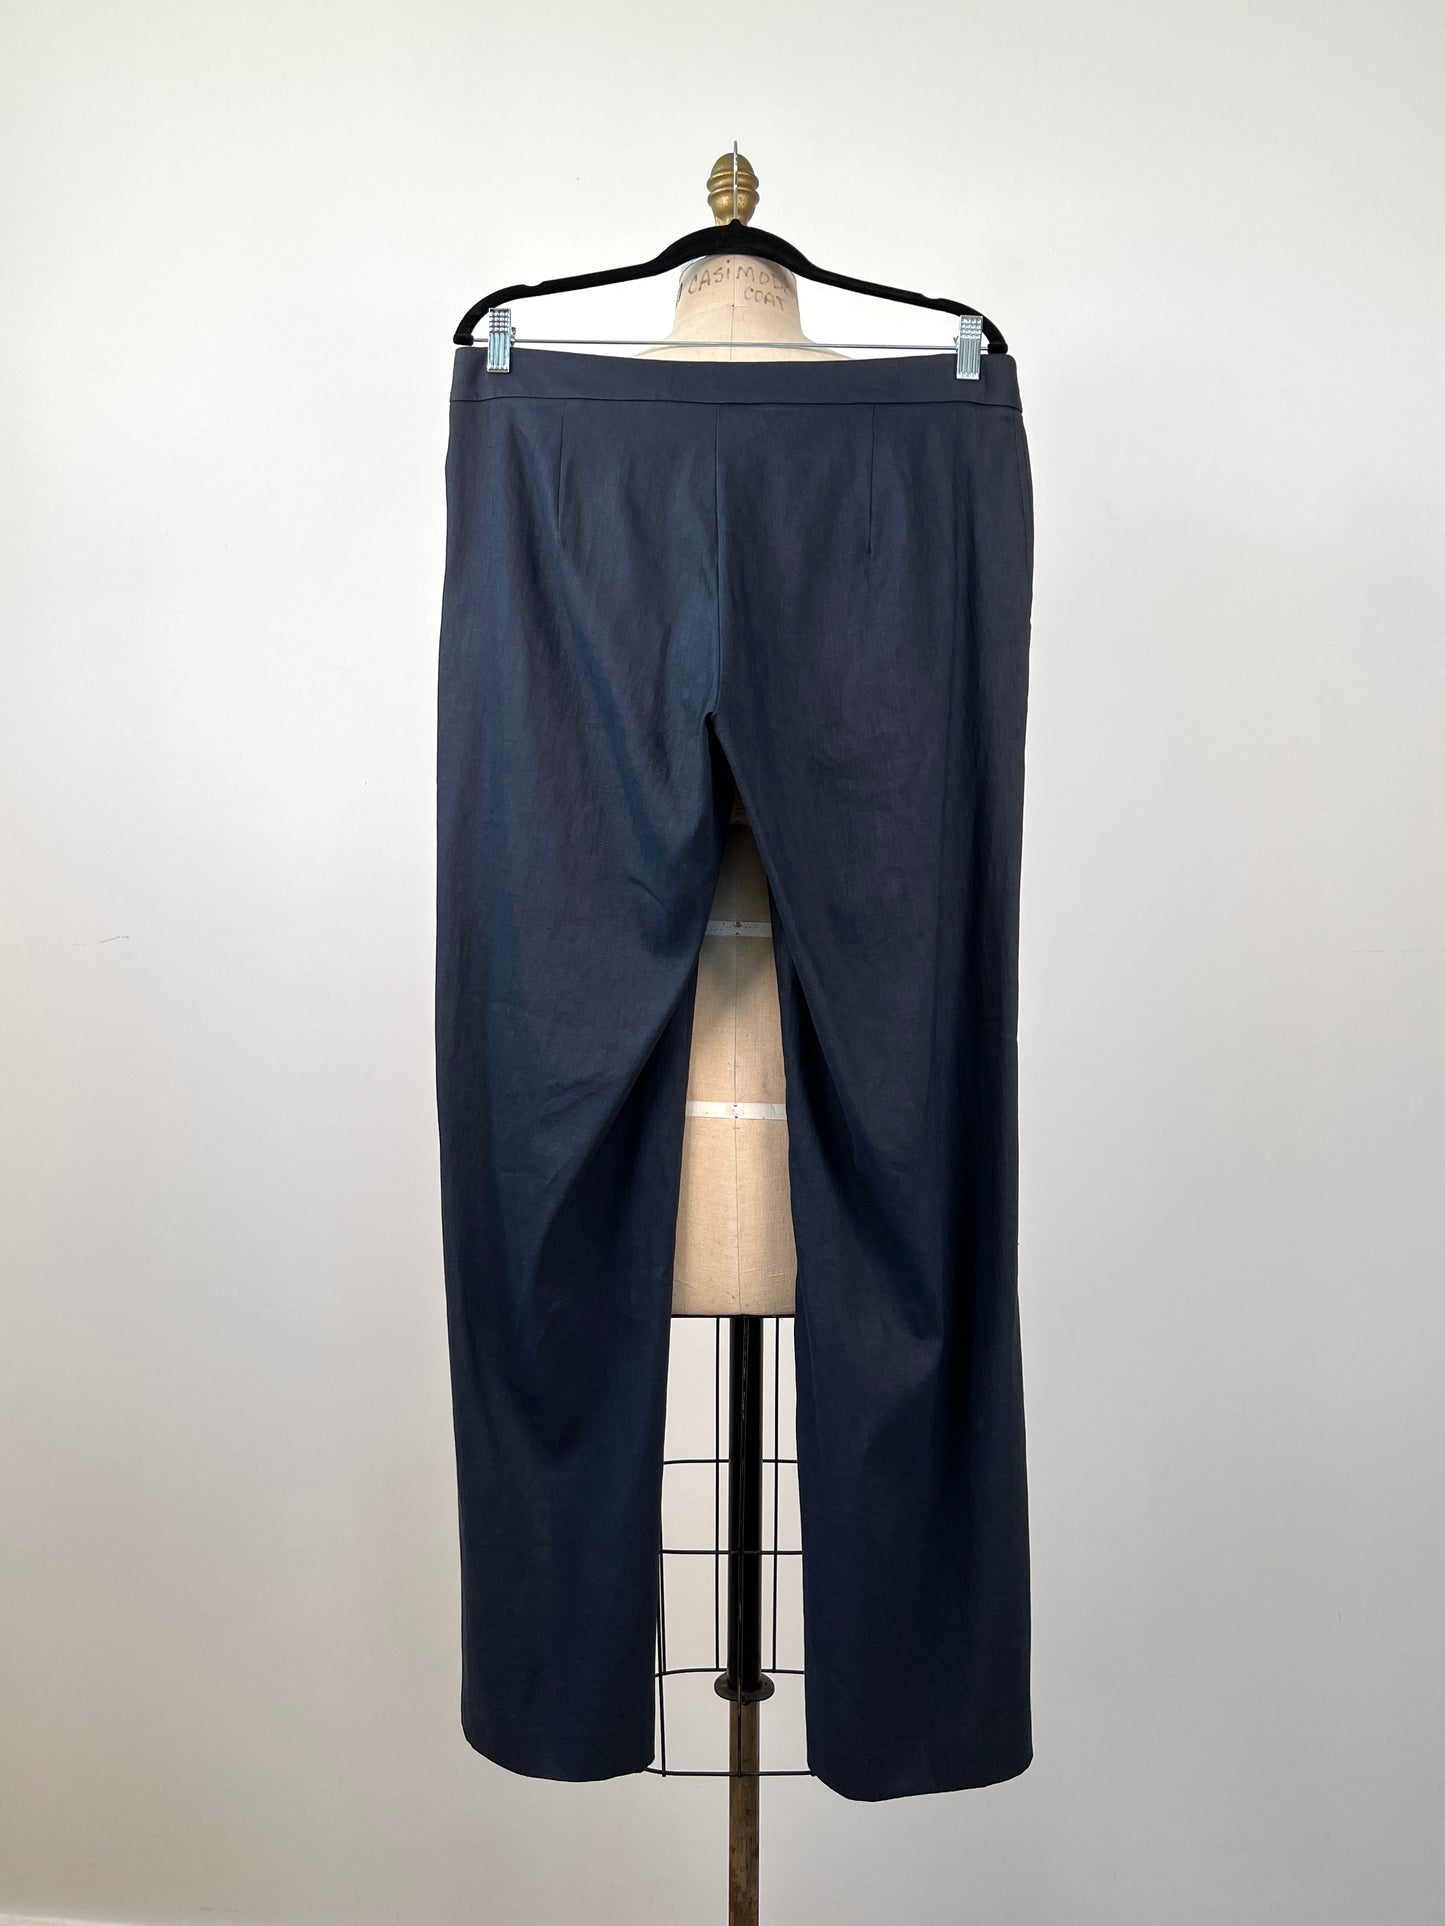 Pantalon marine en lin techno extensible tout confort (XS à M)